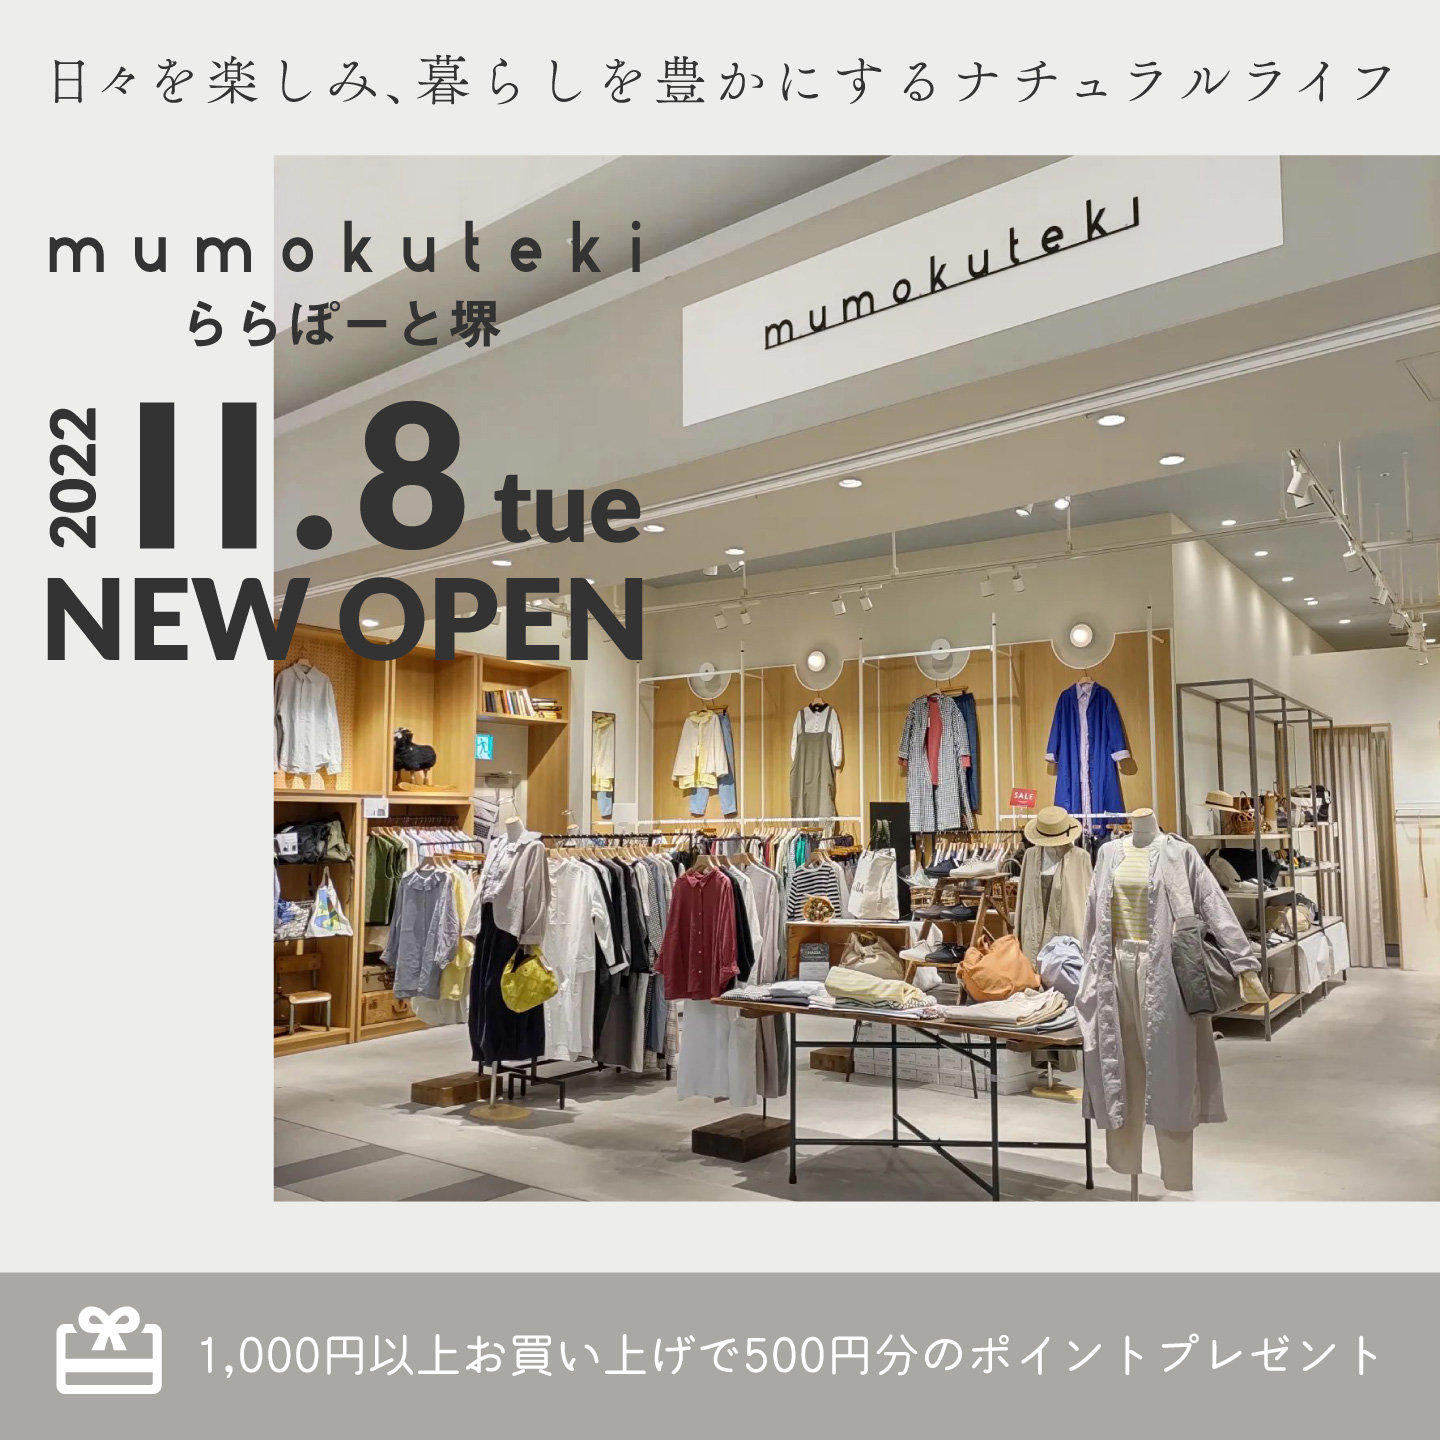 新店舗 NEW OPEN mumokuteki ららぽーと堺